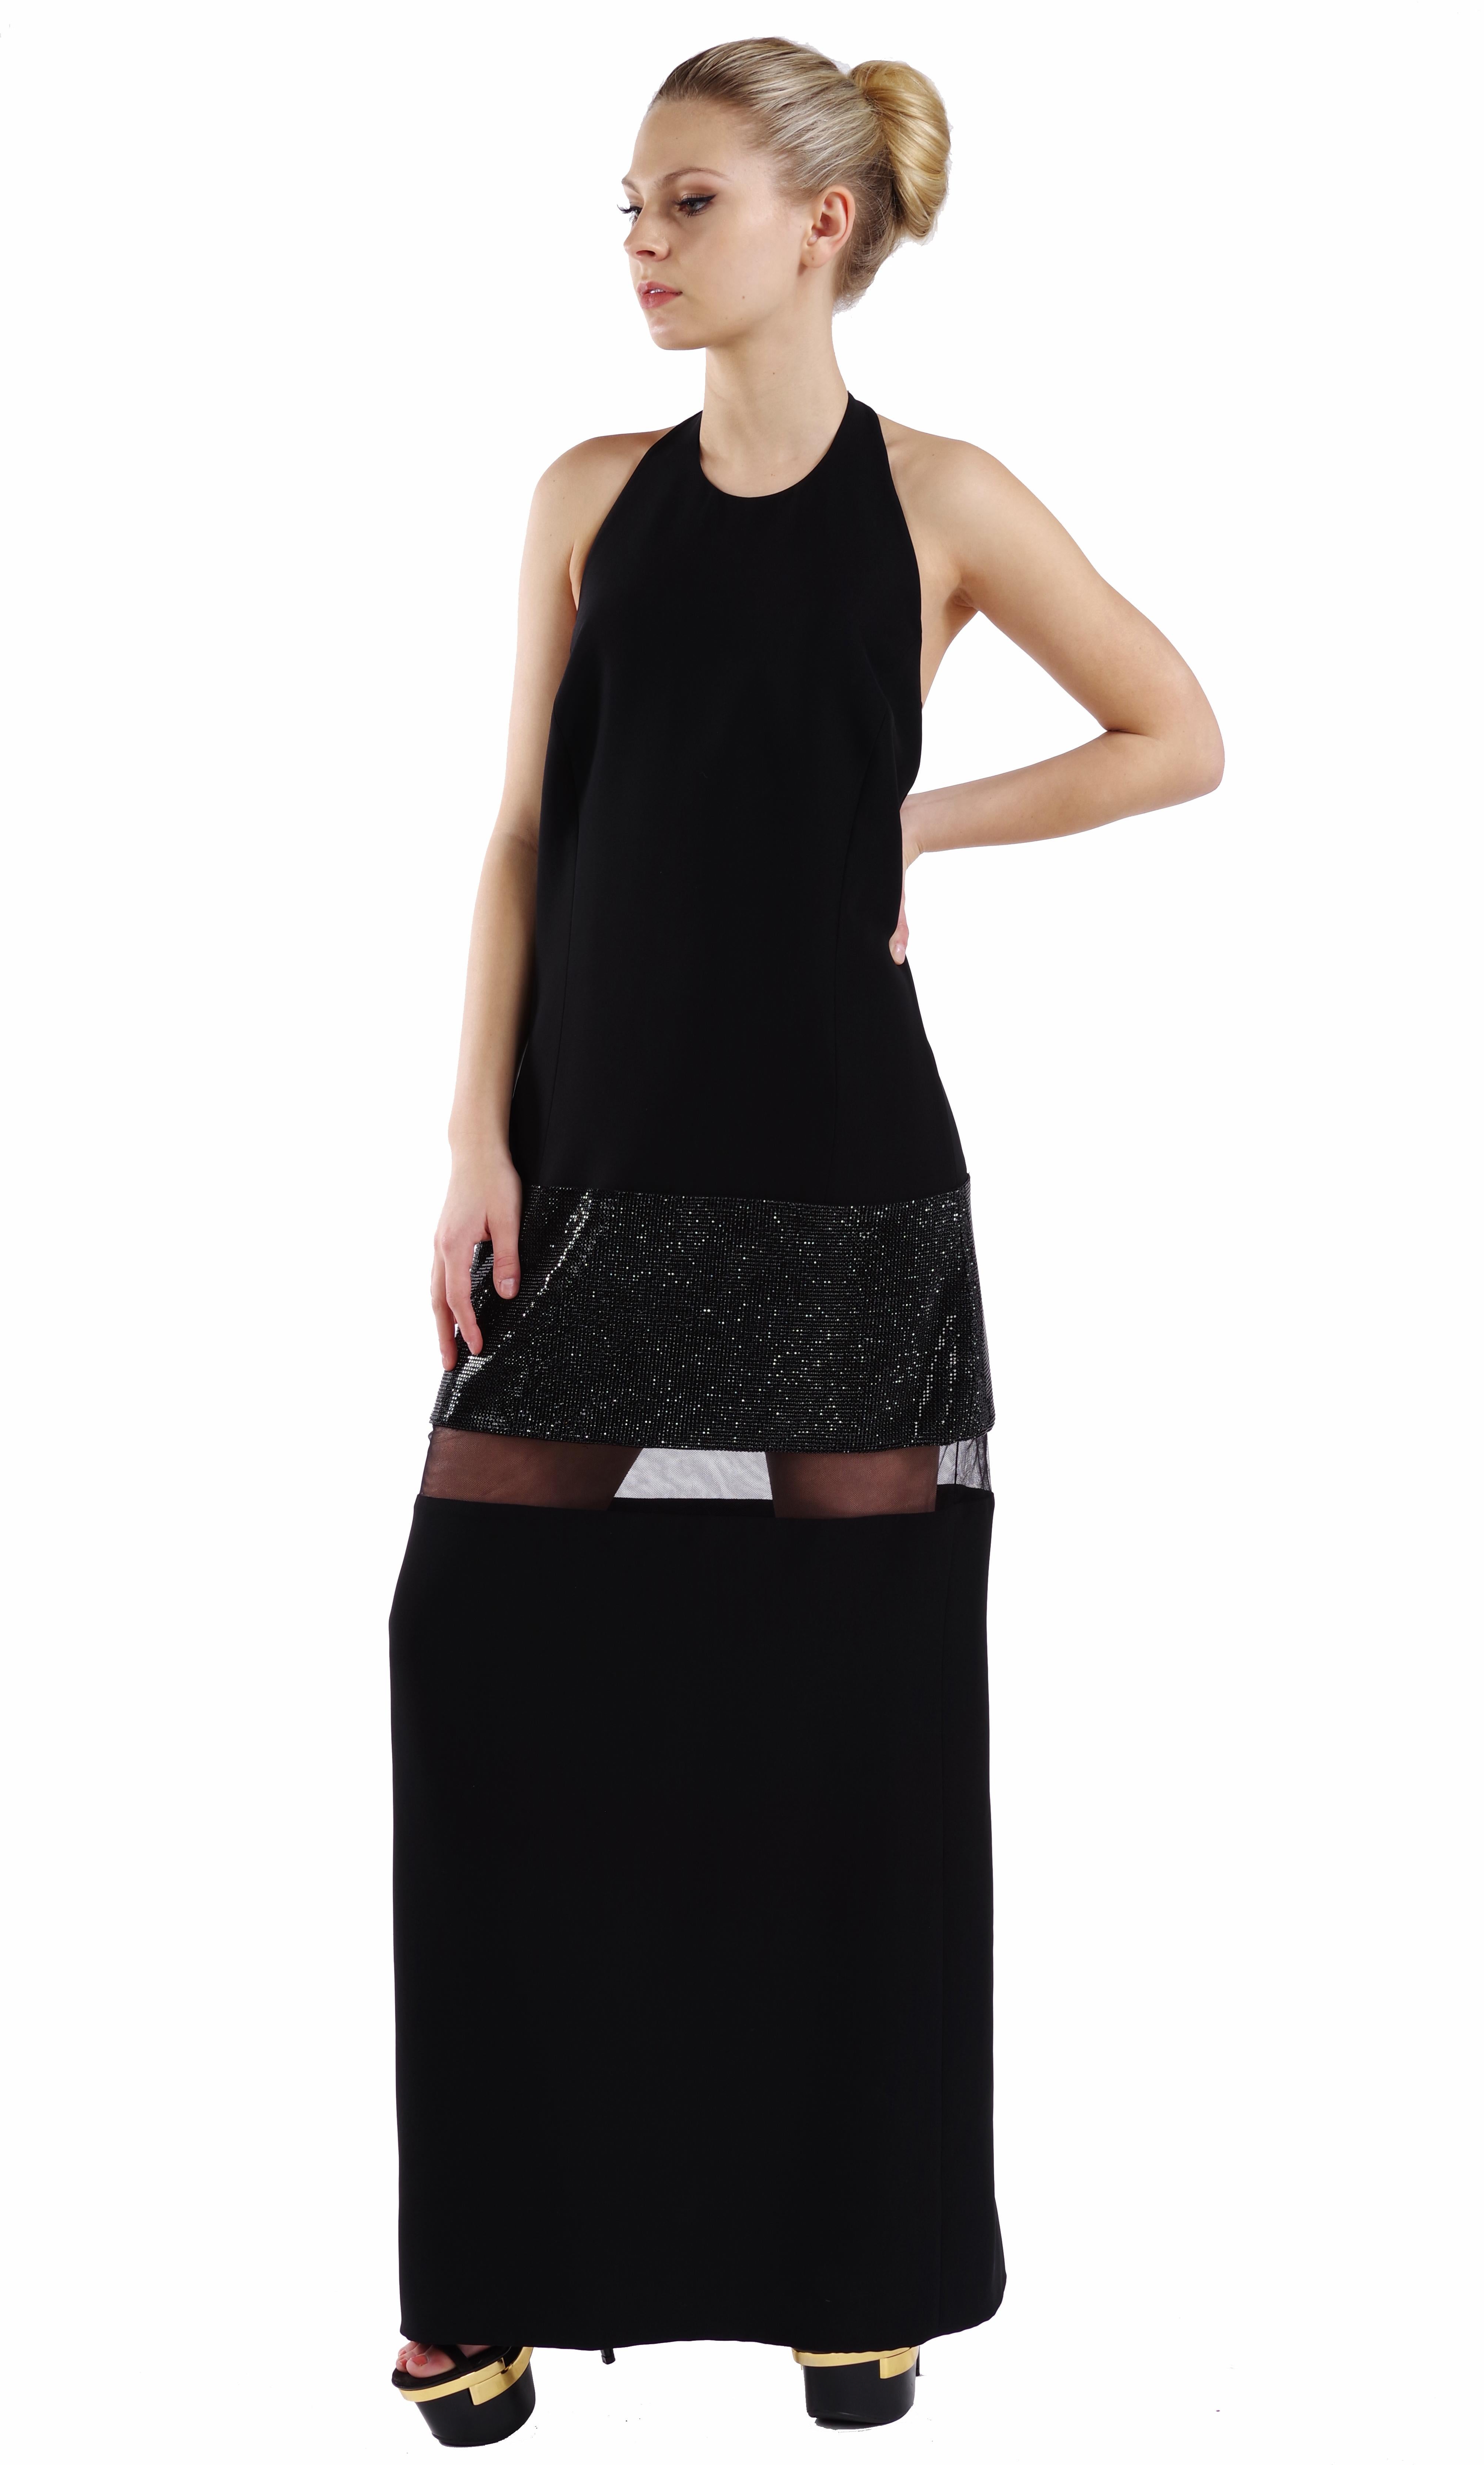 VERSACE 


S/S 2015 look # 42

Robe longue ornée de cristaux

La robe en soie noire de Versace est un exemple de glamour à haute teneur en carbone. 

Il présente une silhouette droite avec un panneau de tulle en maille transparente et un